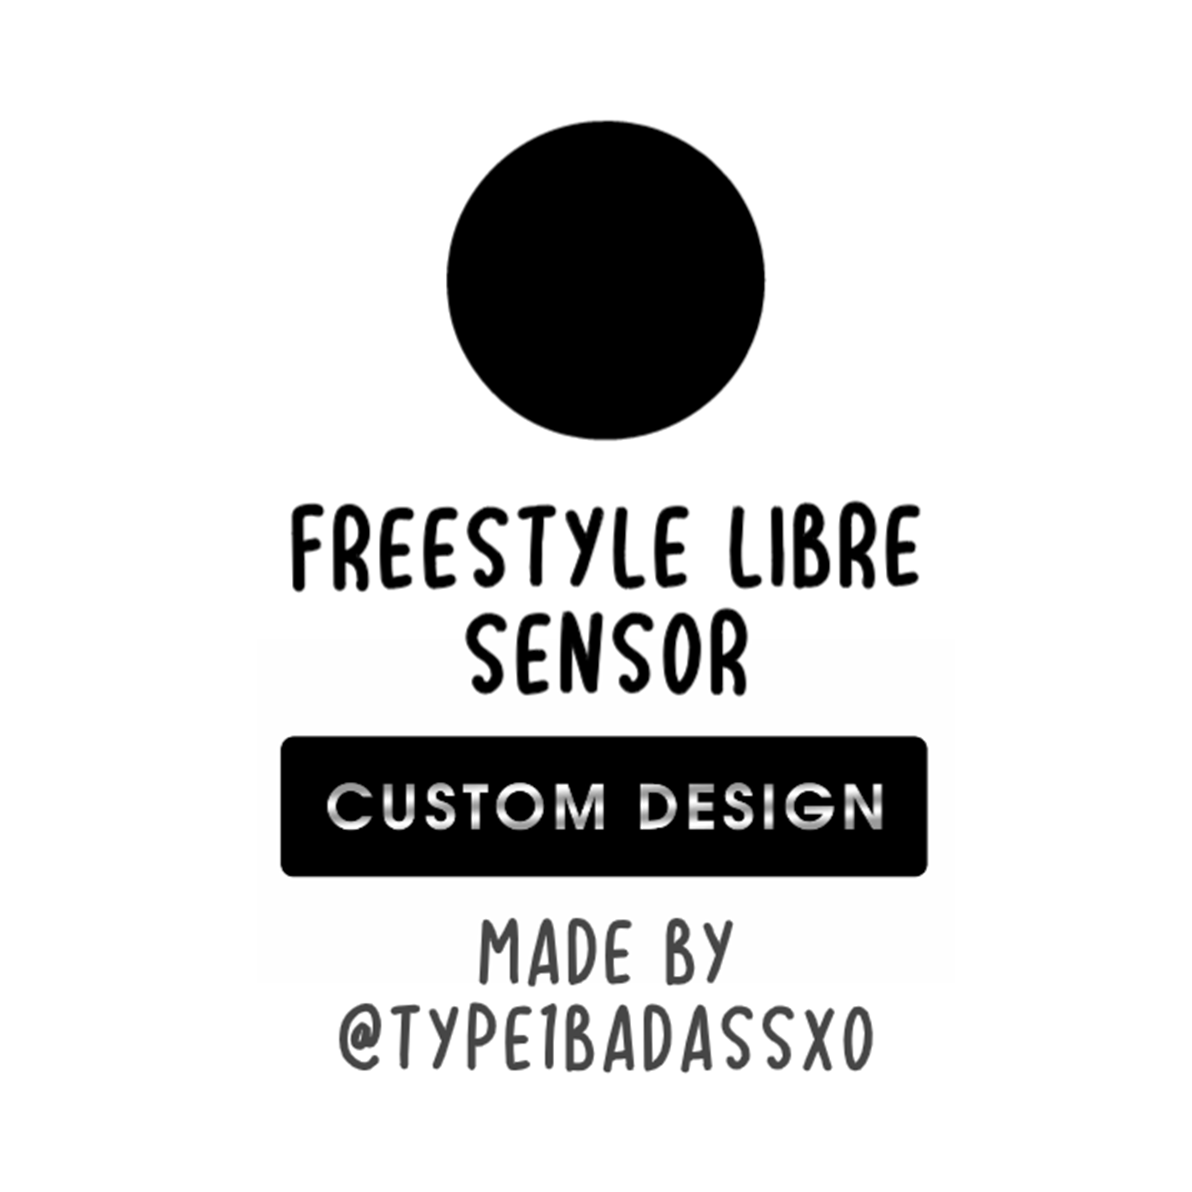 Custom Design - Freestyle Libre Sensor